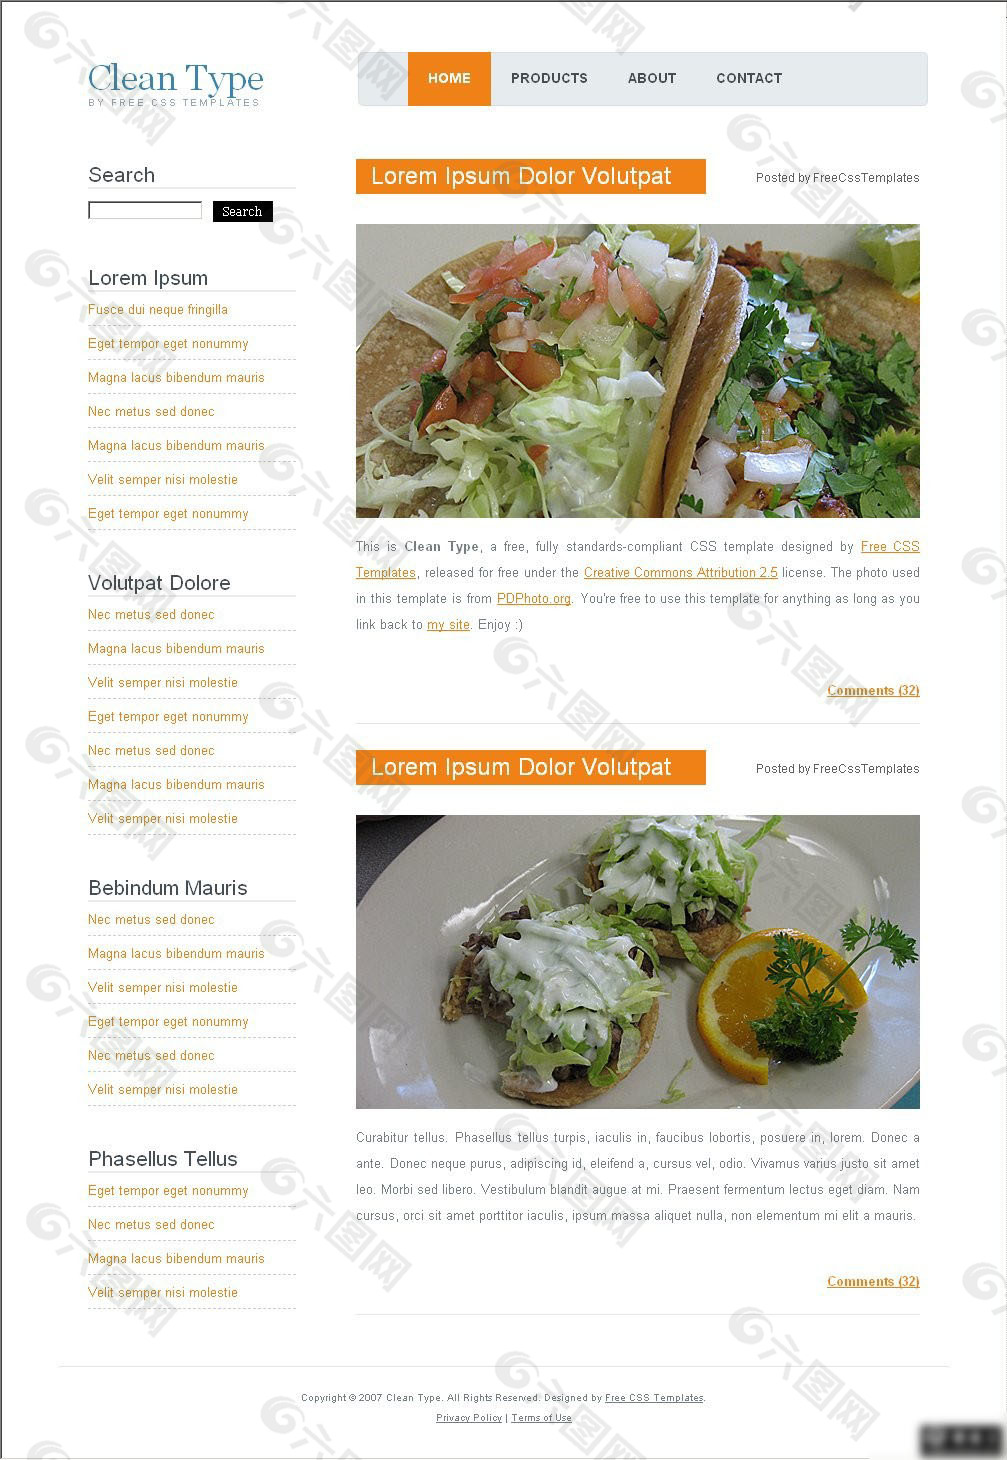 国外餐饮类网页设计